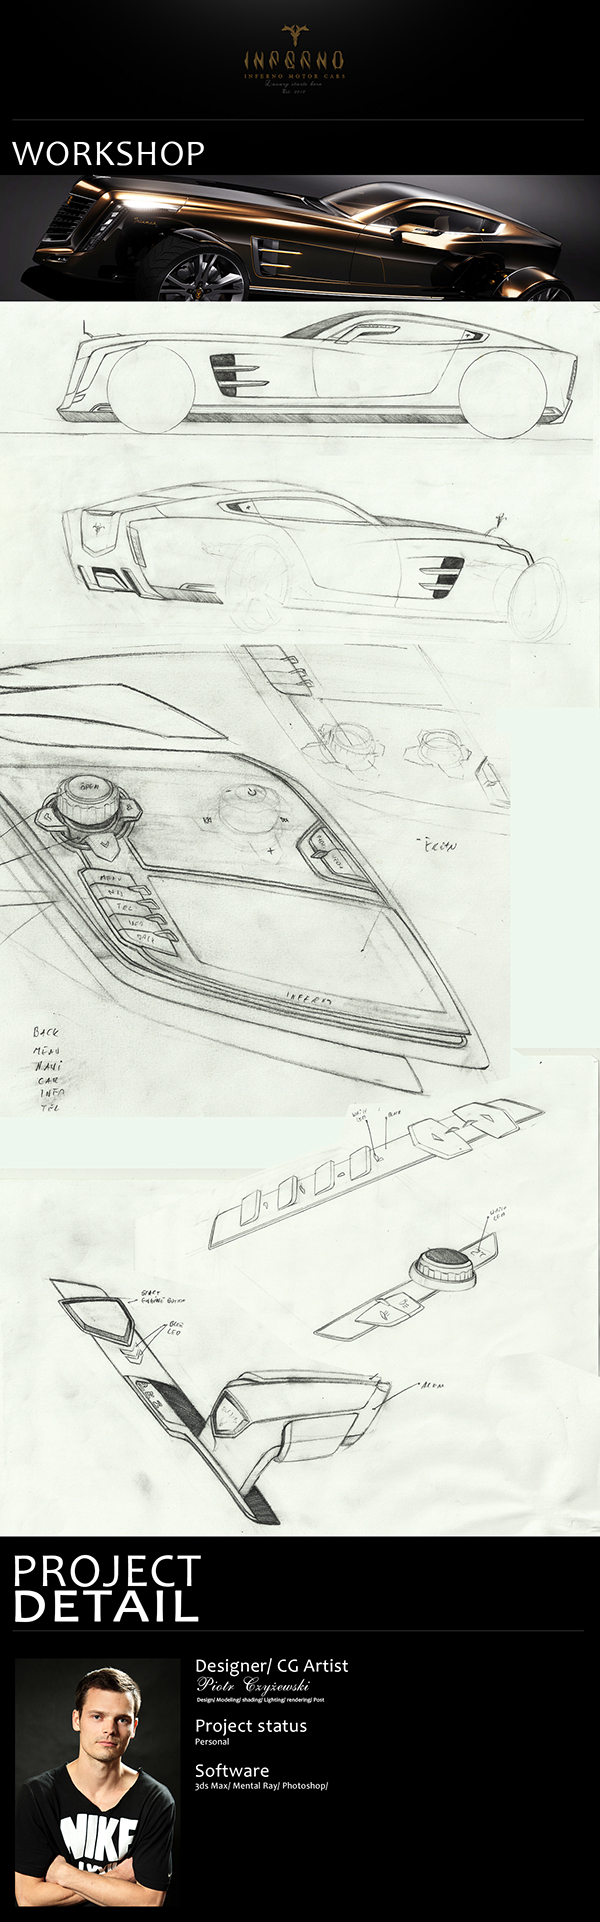 automotive   concept car car  3D Modeling rendering design industril design luxury  triumph  piotr czyzewski exclusiwe